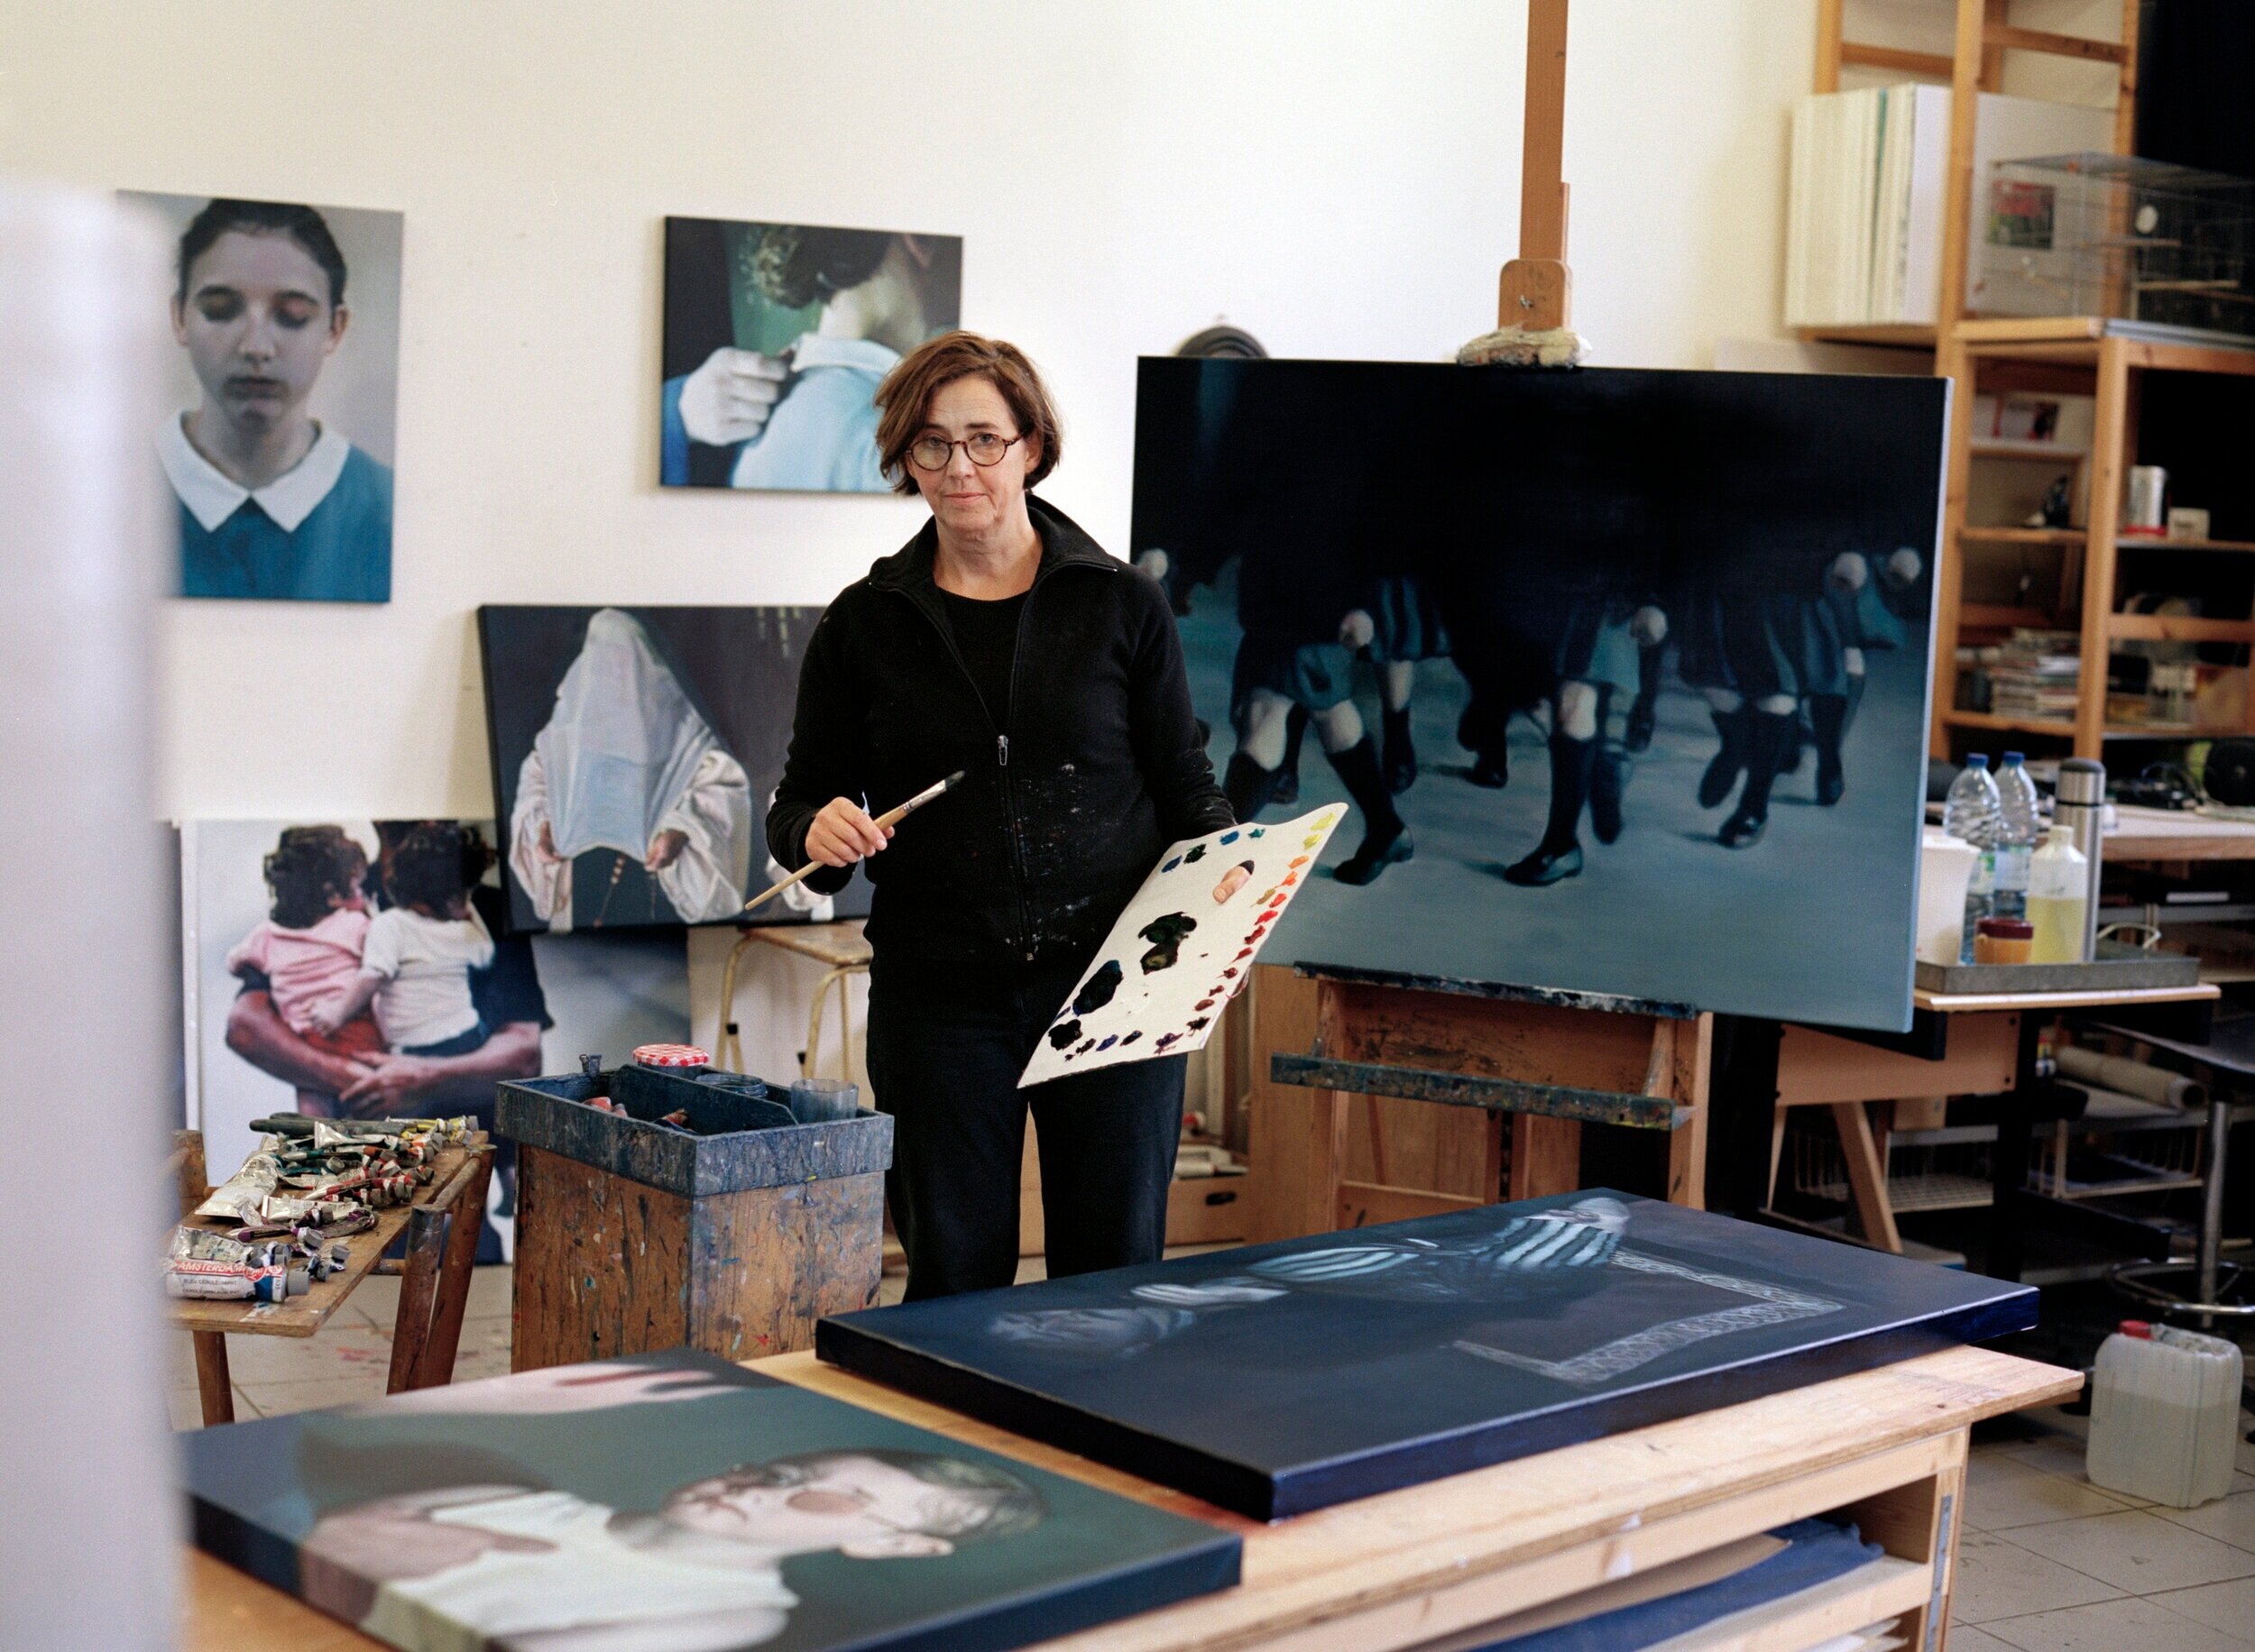  Mieke Teirlinck in her Studio 